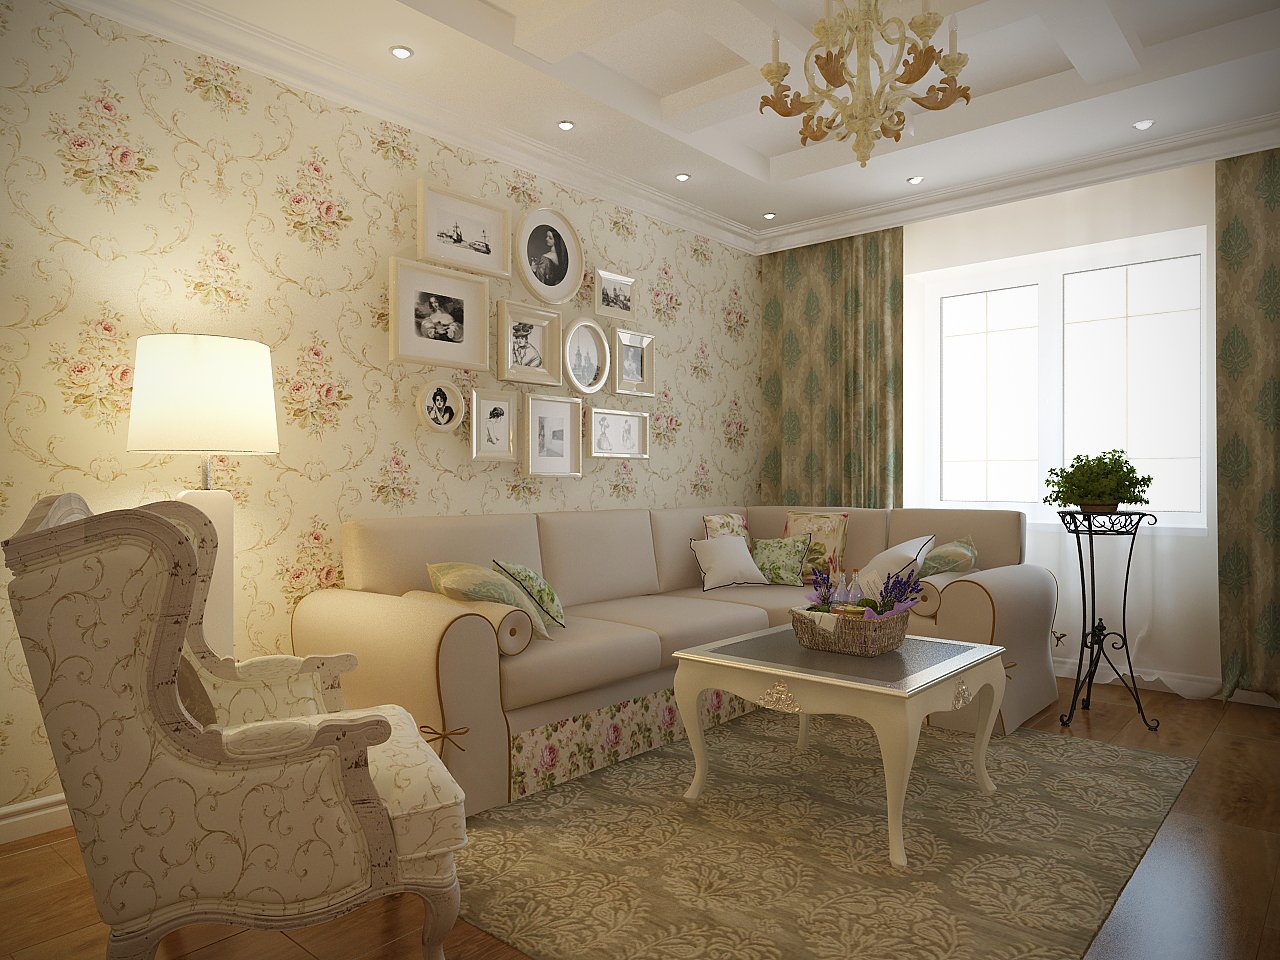 Стиль прованс в интерьере квартиры — 250 фото идей дизайна